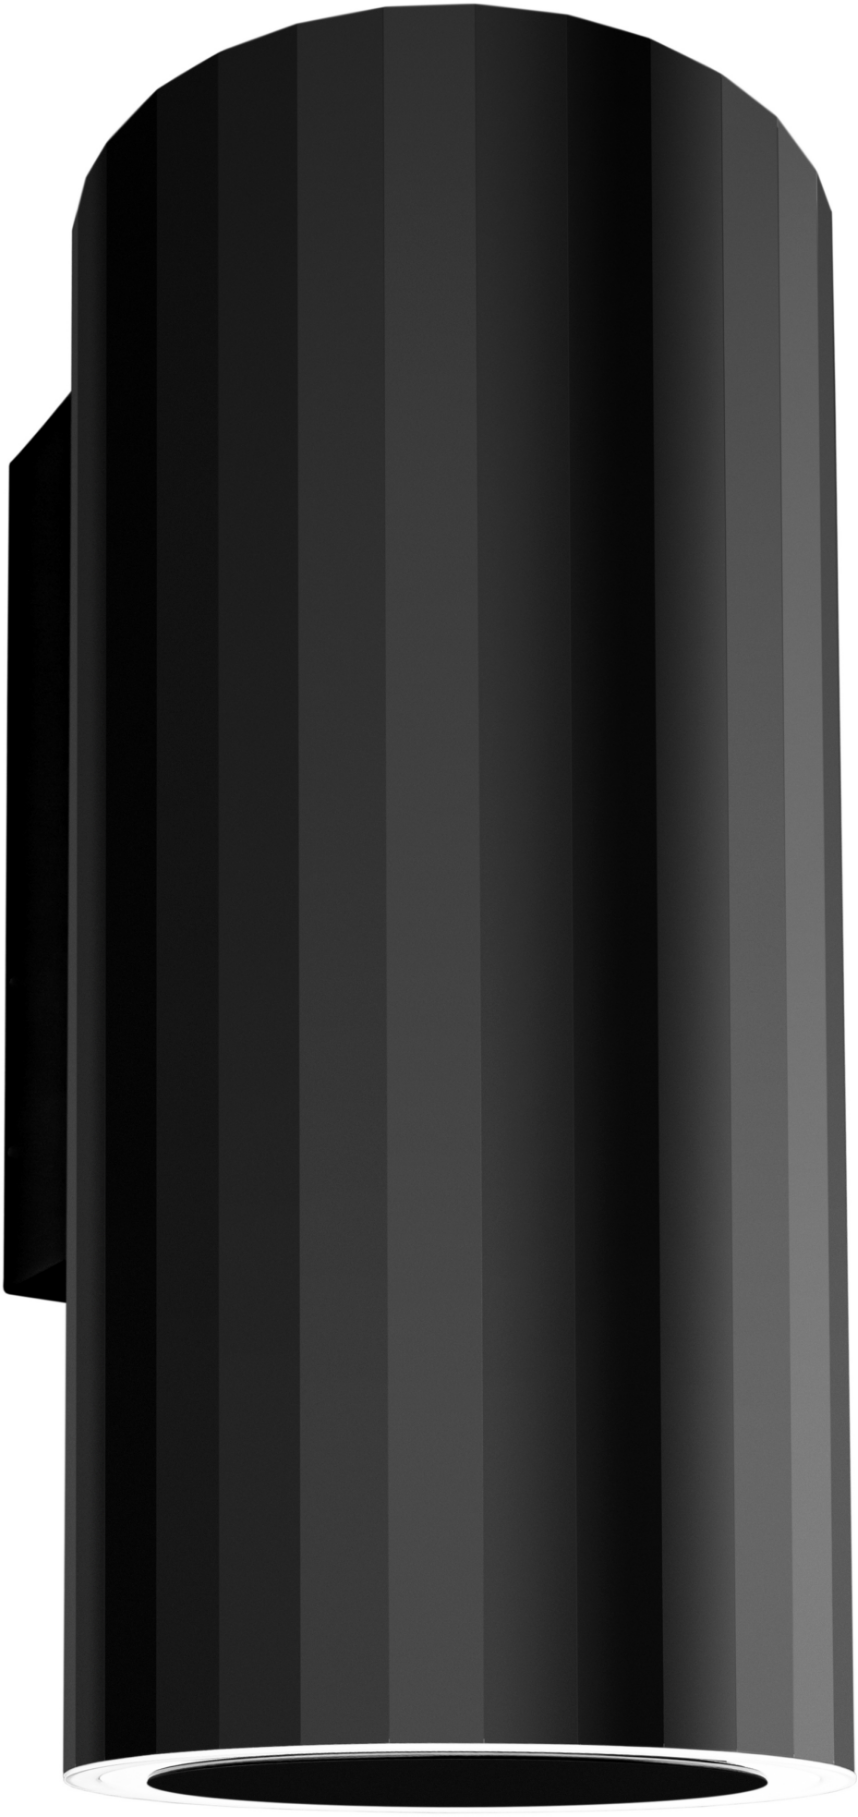 CIARKO DESIGN Ciarko Design Roto Black (CDP3803C) + Záruka 4 roky ZDARMA